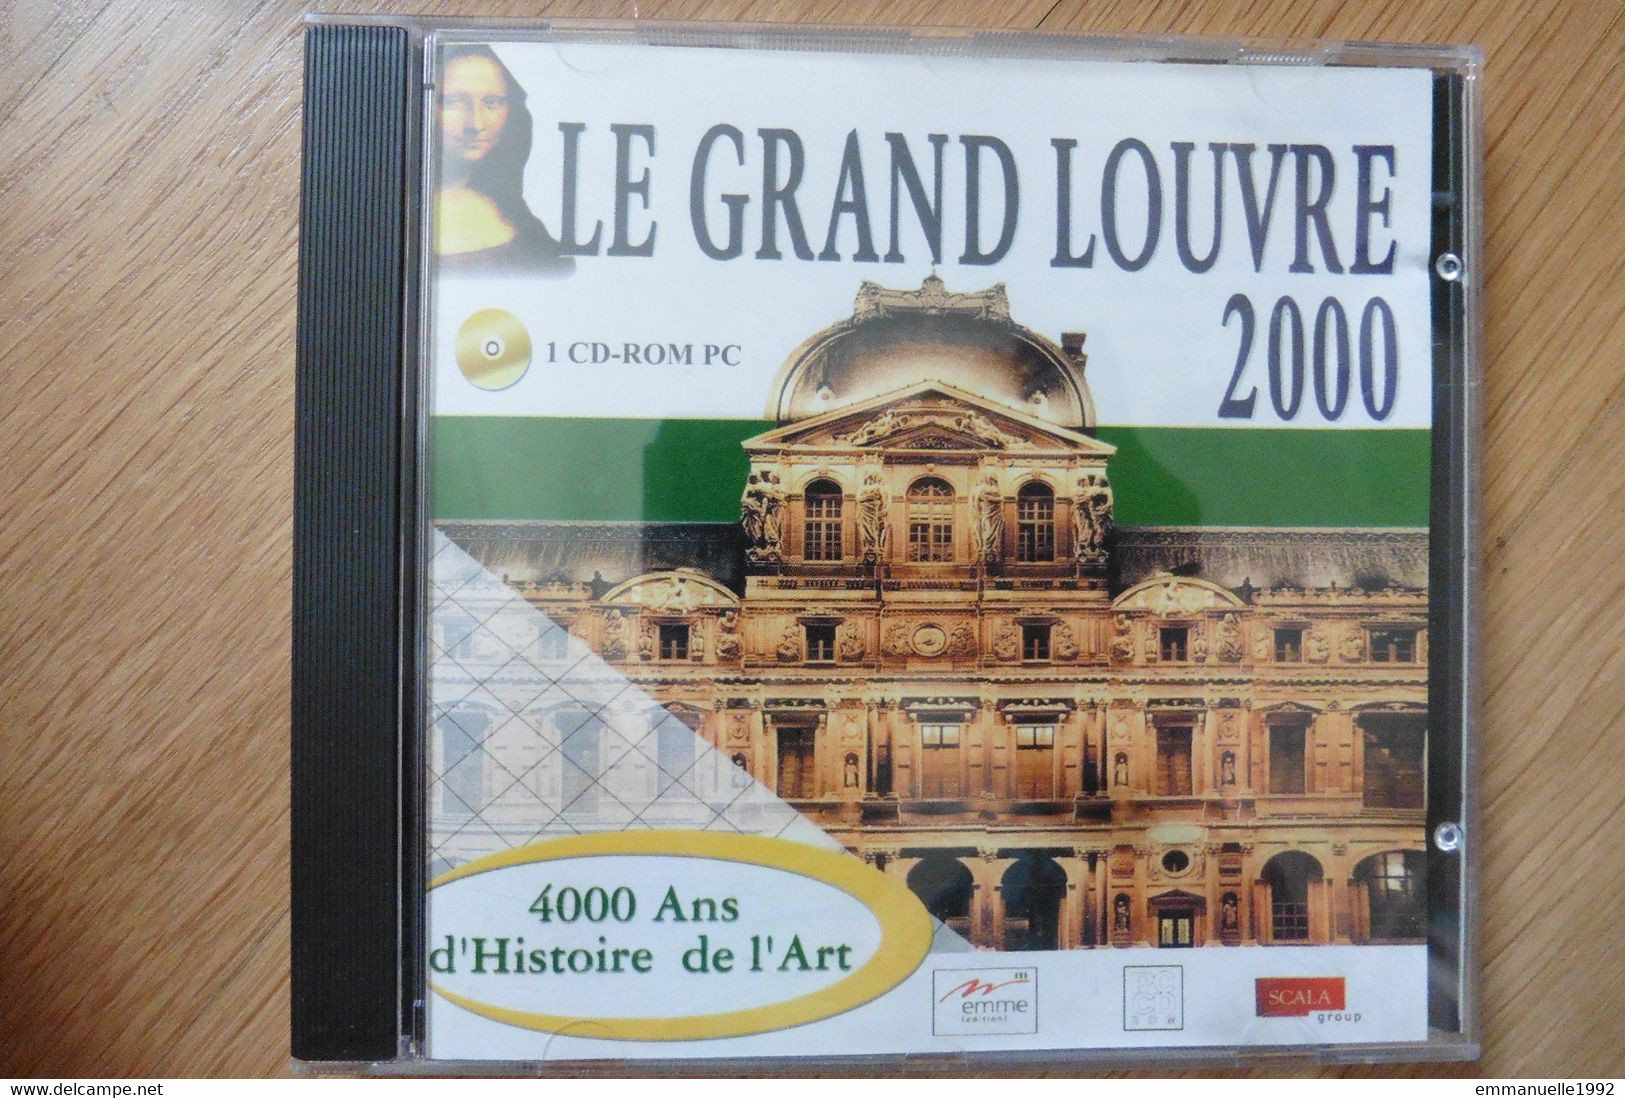 Lot 2 CD Rom PC Le Grand Louvre 2000 Le Musée Et Ses Chefs D'oeuvre Histoire Art - Other Book Accessories